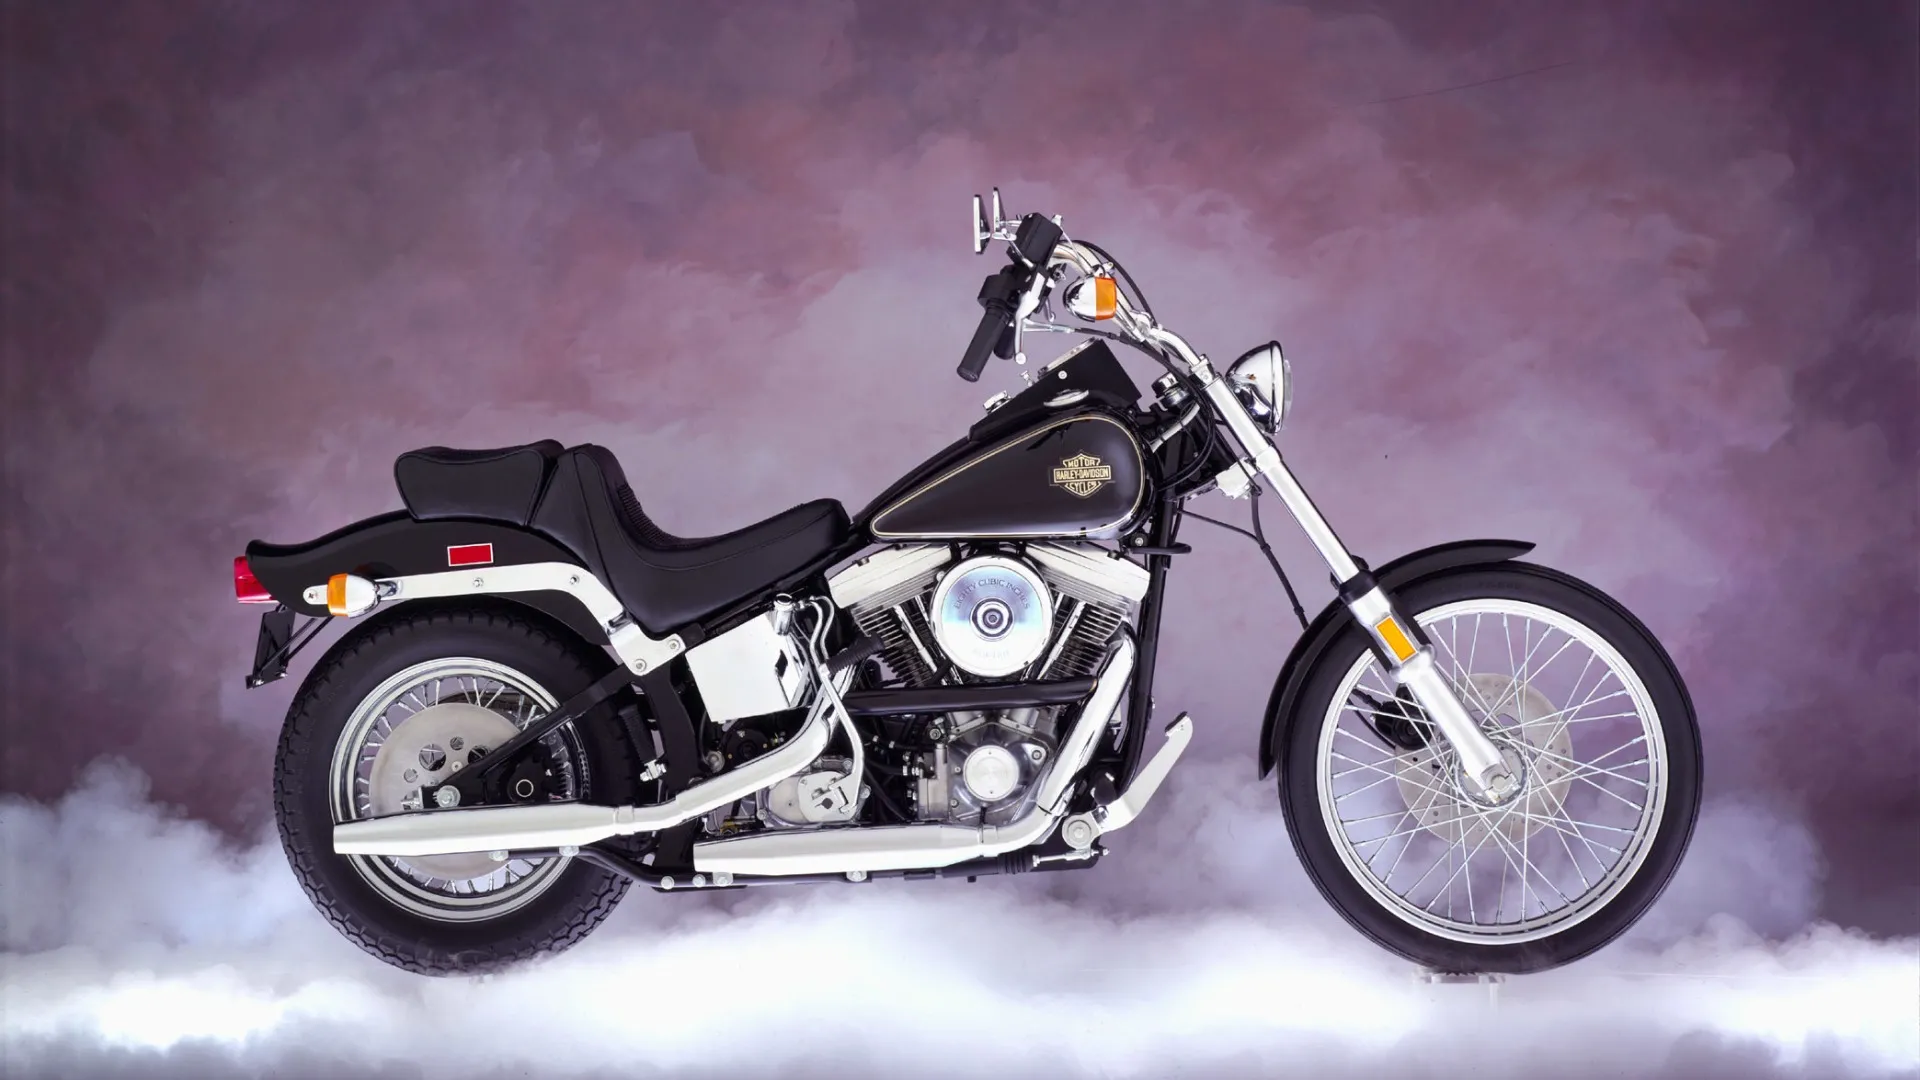 La plataforma Softail de Harley – Davidson cumple 40 años